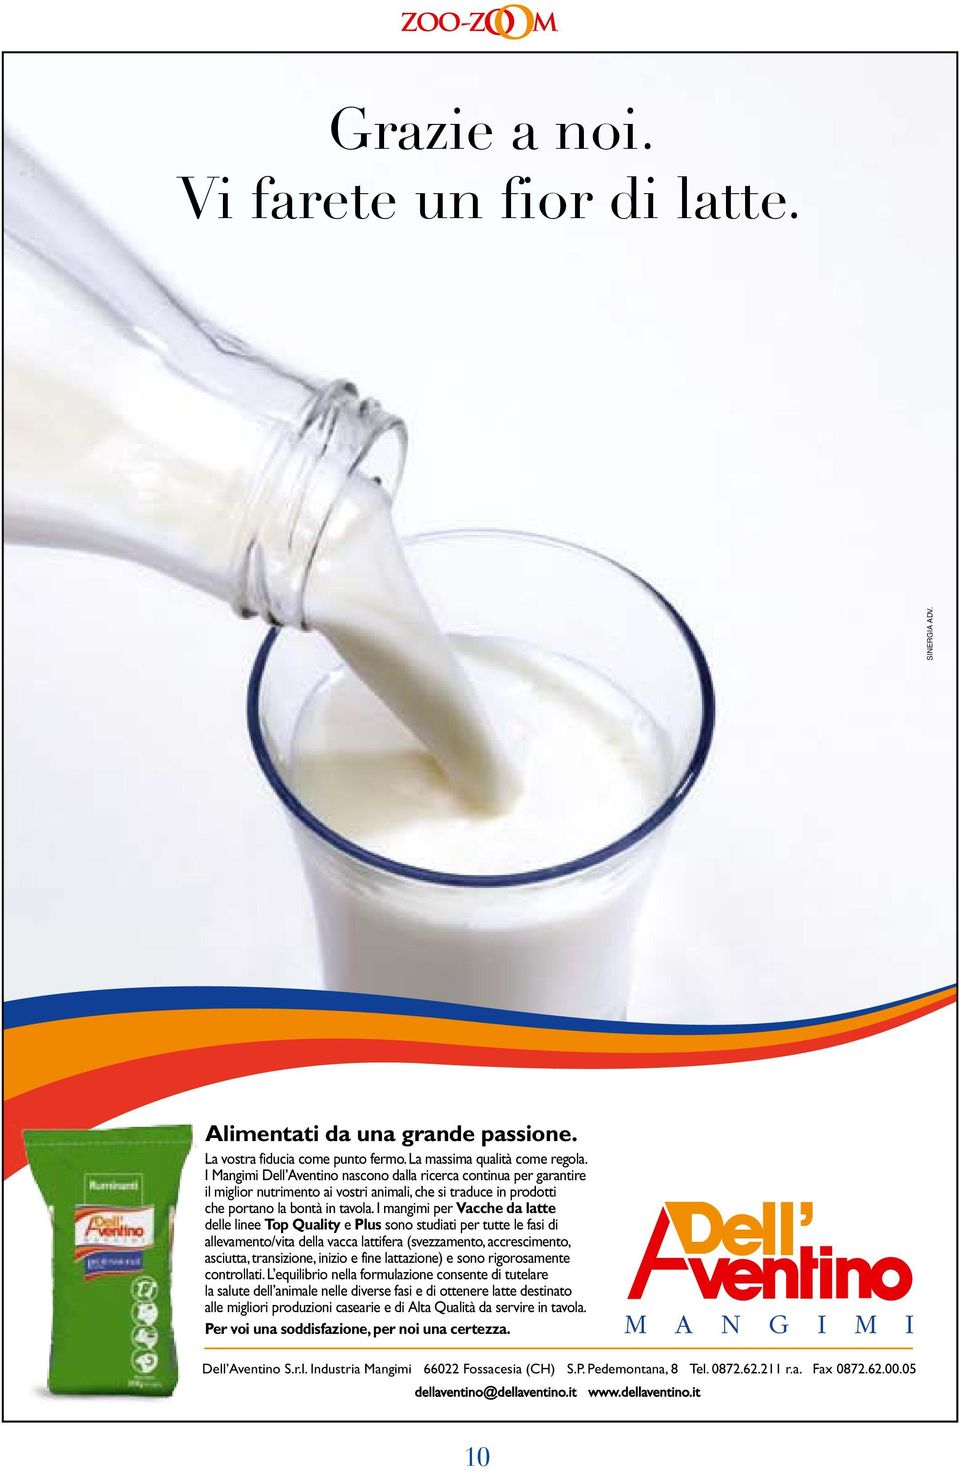 I mangimi per Vacche da latte delle linee Top Quality e Plus sono studiati per tutte le fasi di allevamento/vita della vacca lattifera (svezzamento, accrescimento, asciutta, transizione, inizio e